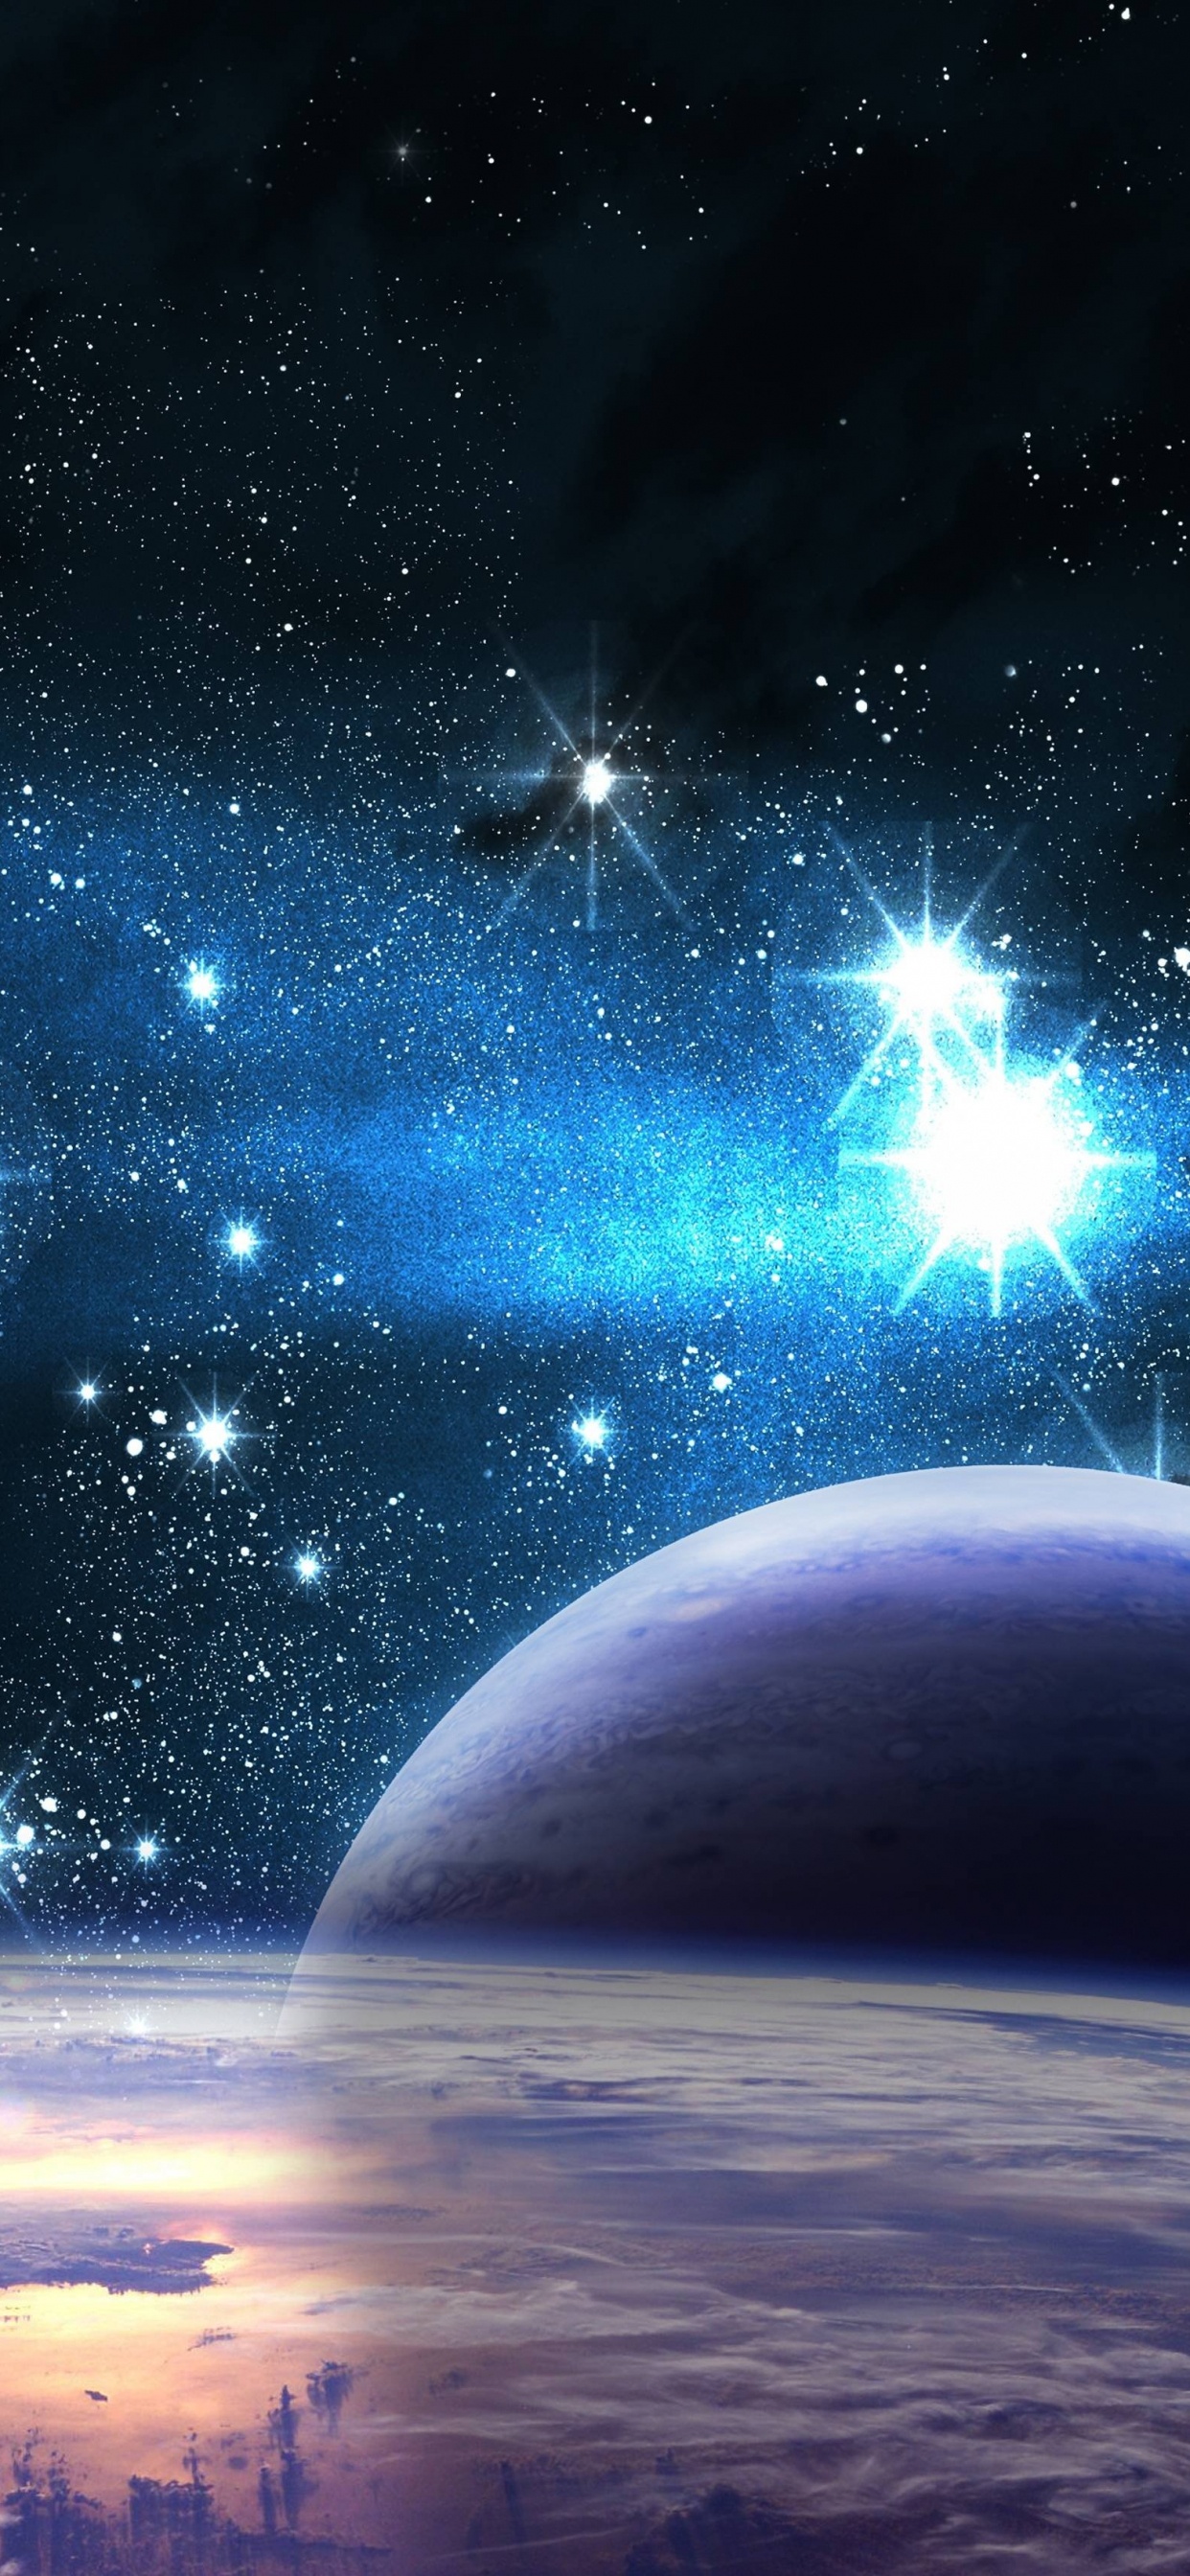 Blau-weißer Planet Mit Sternen. Wallpaper in 1242x2688 Resolution